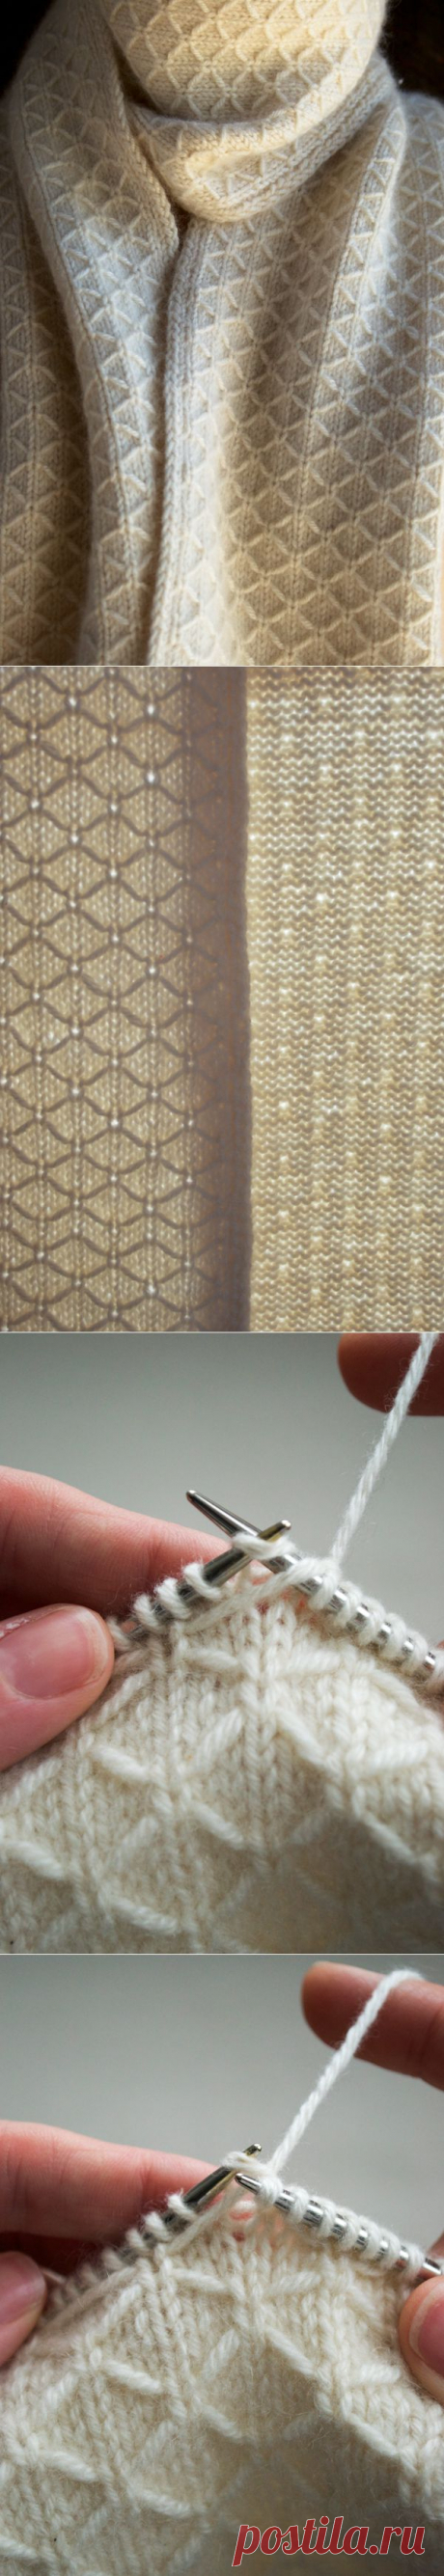 Лаура петли: Трельяж шарф - Purl пчела - вязание крючком, шитье, вышивка ремесел структуры и идеи!